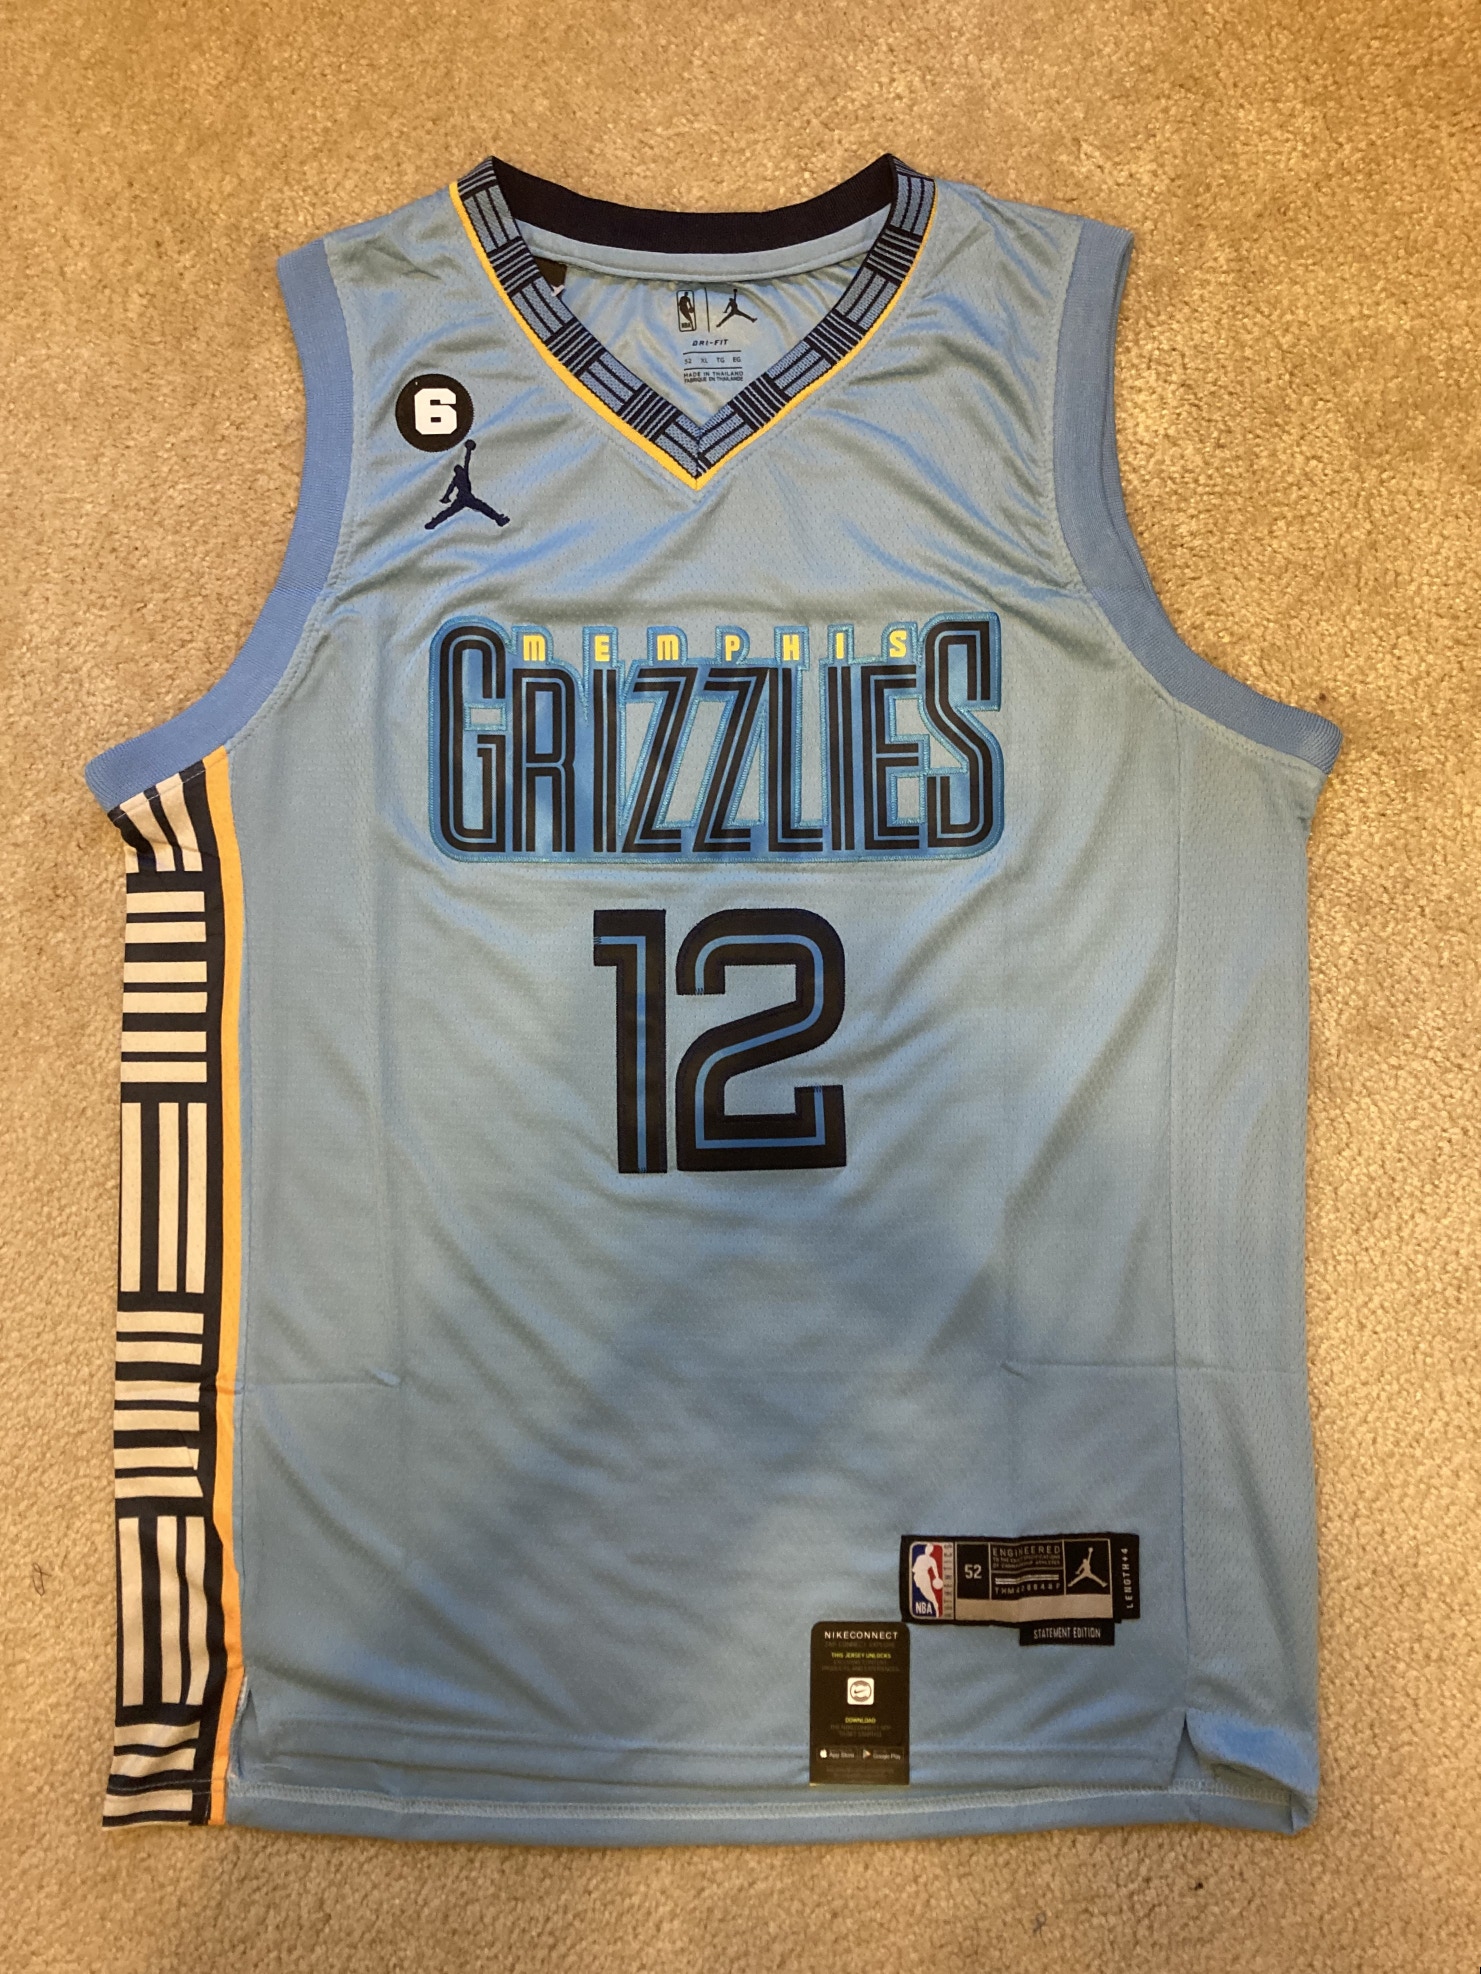 NEW - Mens Stitched Nike NBA Jersey - Ja Morant - Grizzlies - Size M-XL